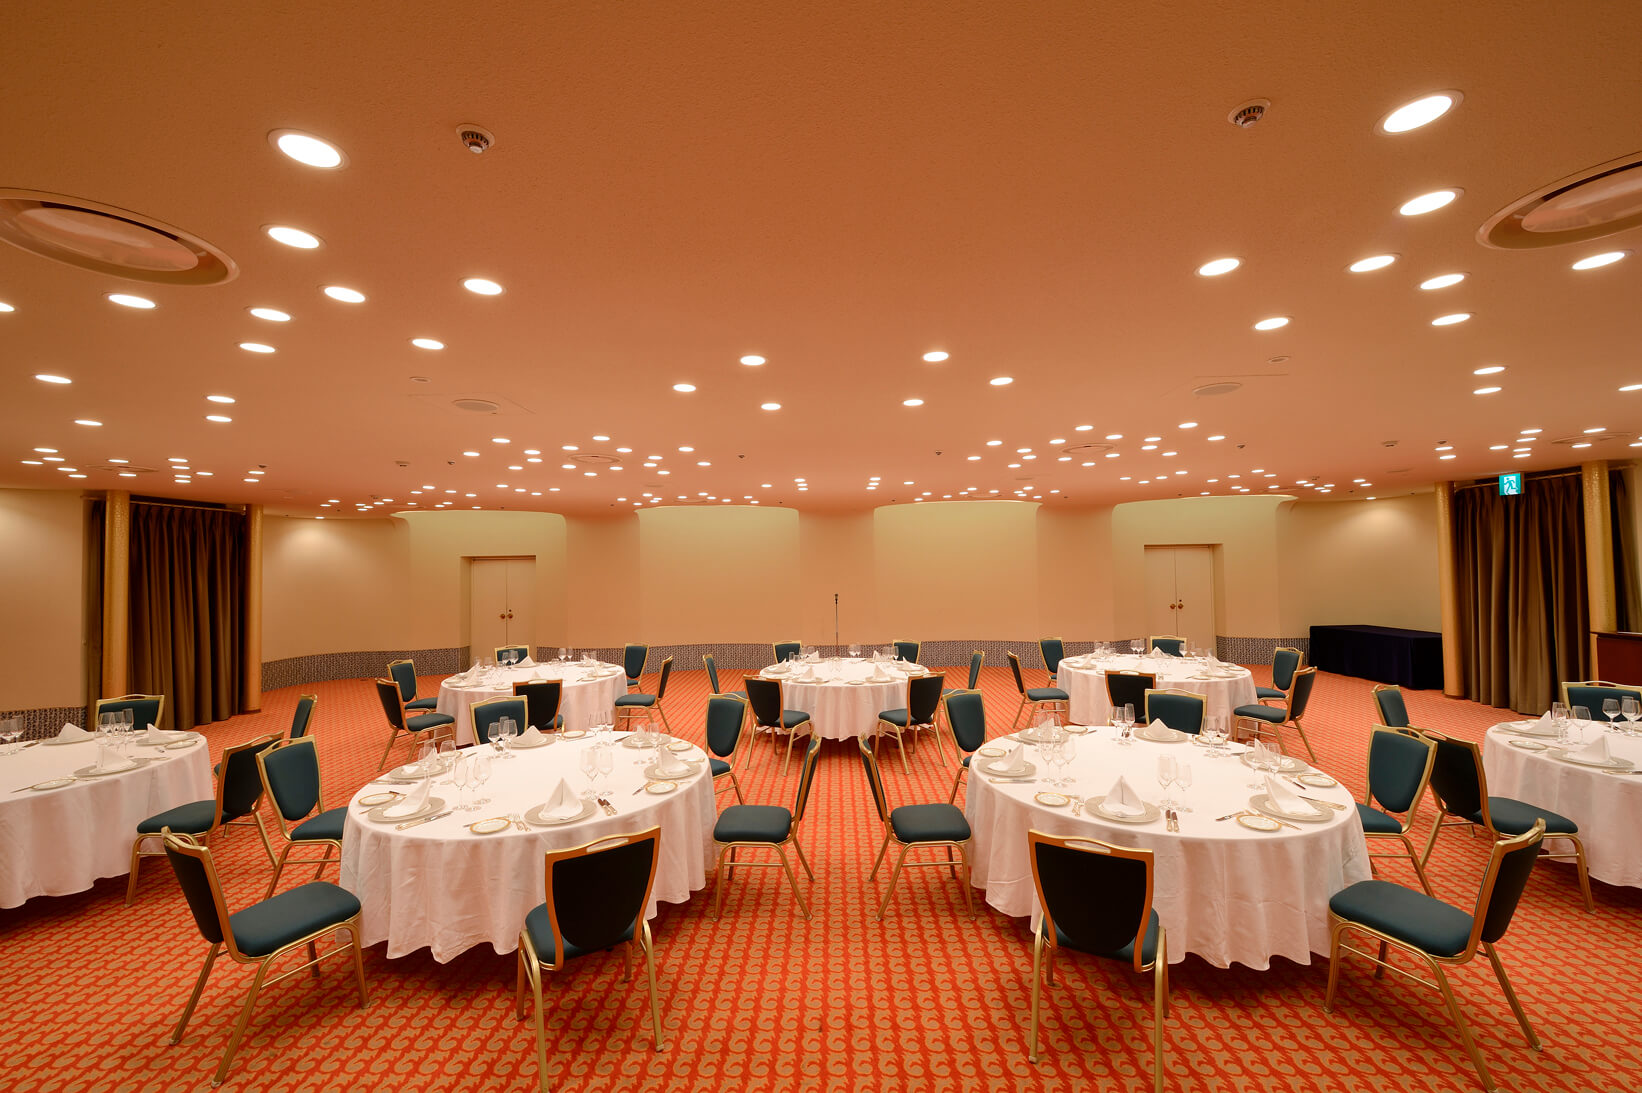 [Main Building] Main Banquet Hall “SURUGA”